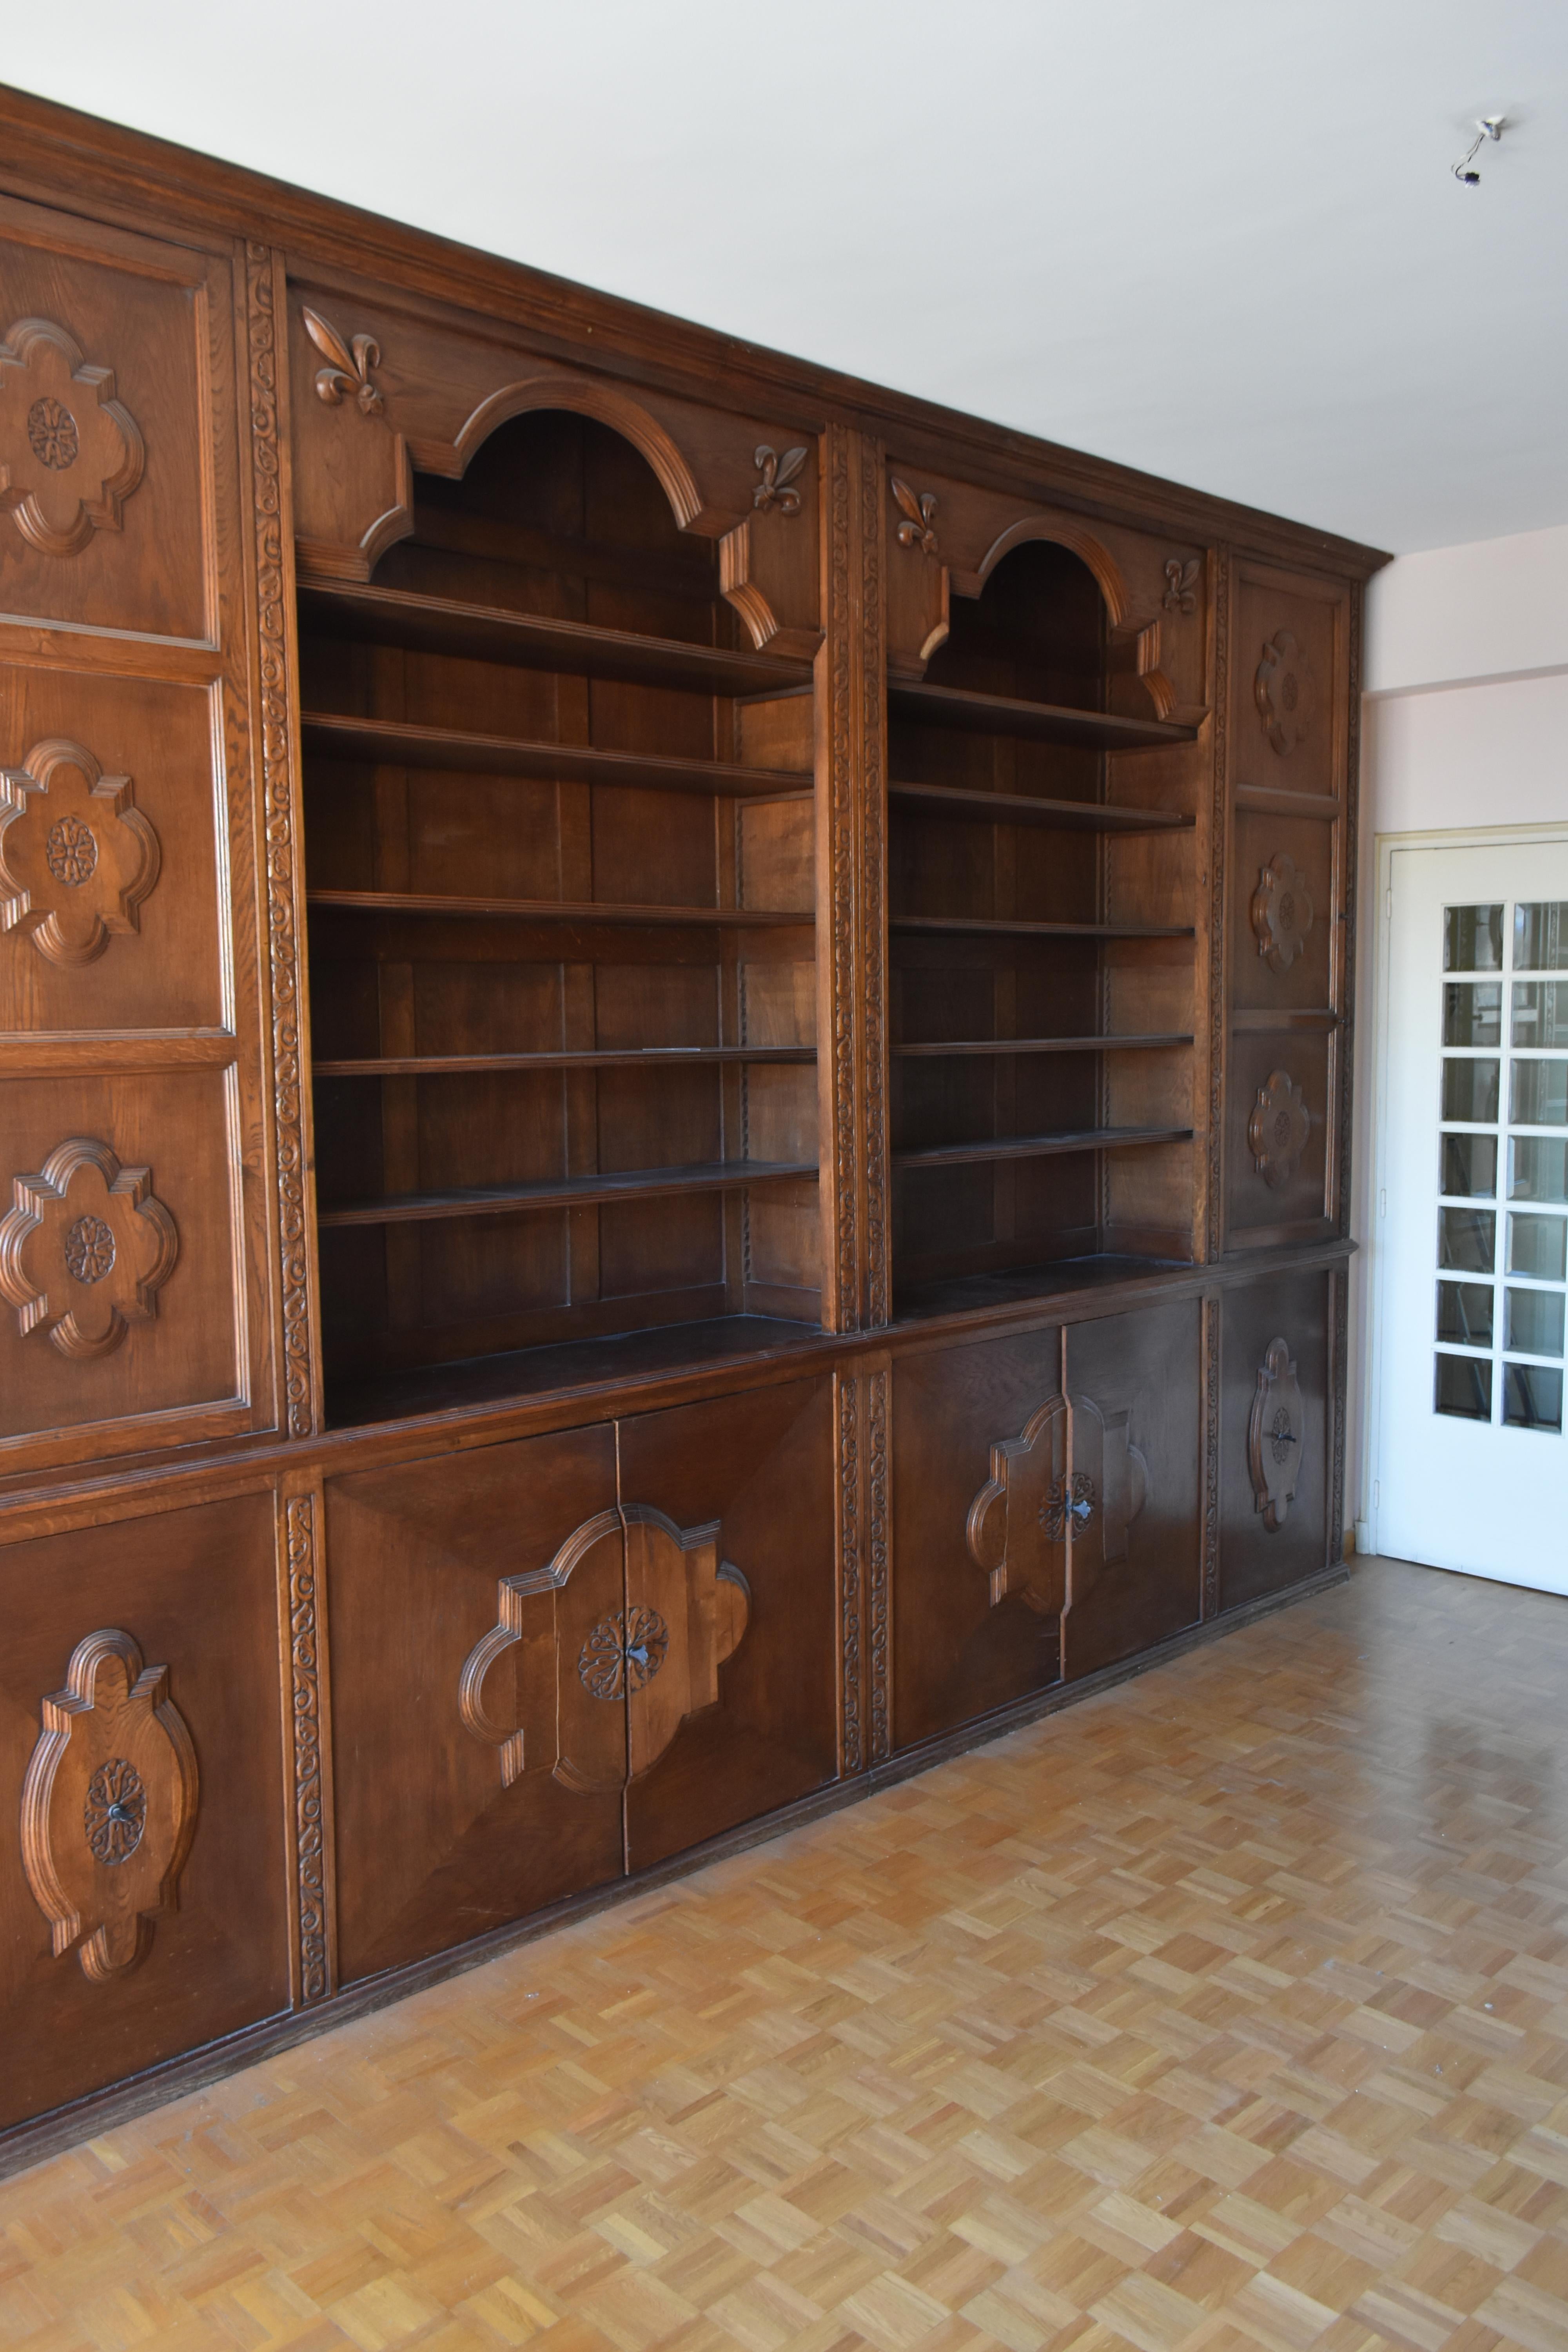 Holzarbeiten bilden Eiche Bibliothek Stil 1900er Jahre von zahlreichen Lagerung und Regale zusammen. Ursprünglich handelte es sich um ein Apothekenholzwerk. Mit Lilienblüten dekorieren.